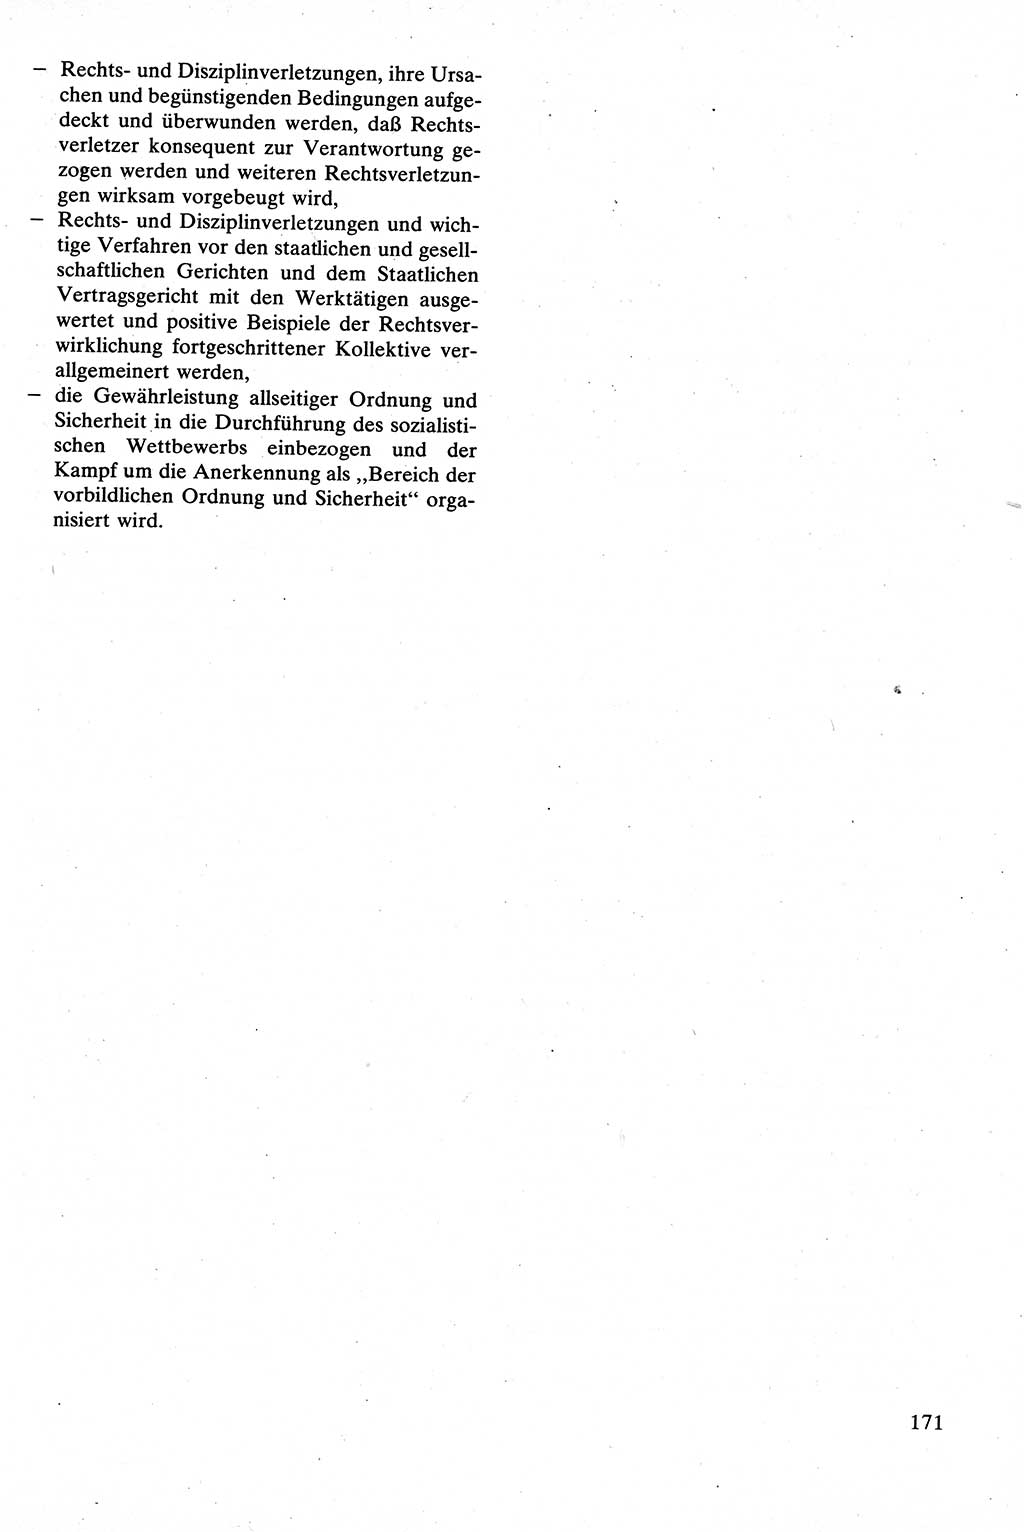 Strafrecht [Deutsche Demokratische Republik (DDR)], Besonderer Teil, Lehrbuch 1981, Seite 171 (Strafr. DDR BT Lb. 1981, S. 171)